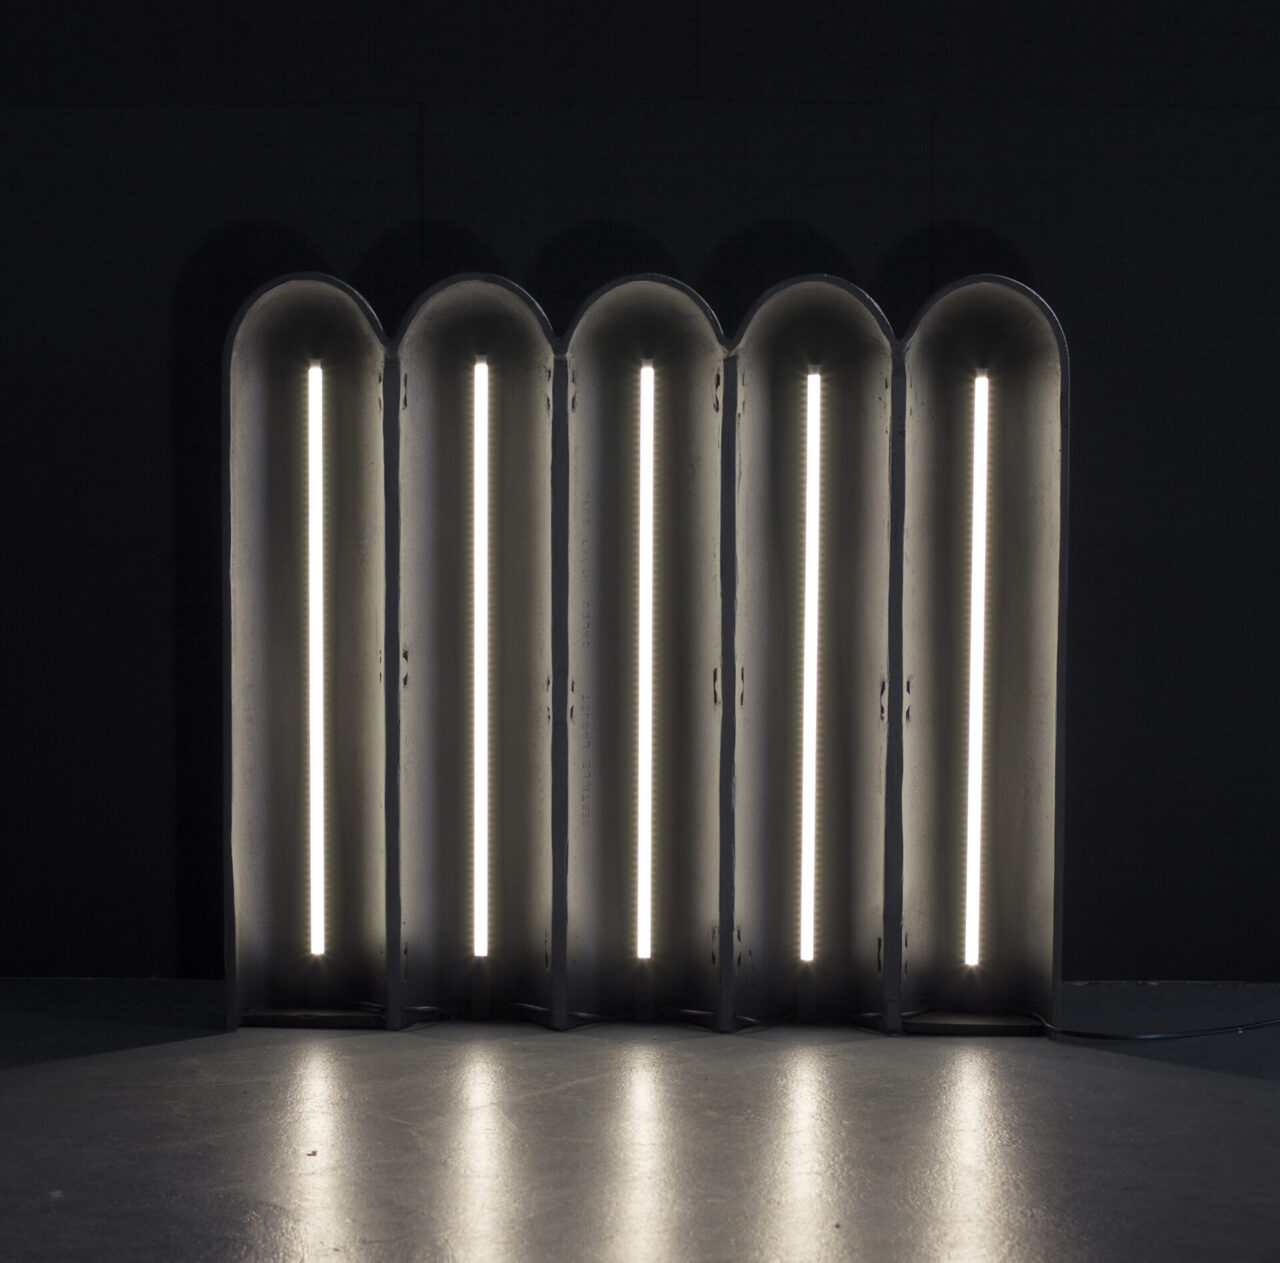 Caleo : objet lumineux en fonderie d'aluminium gris anthracite. Design suisse Bertille Laguet. Fabrication française par l'artiste elle-même.